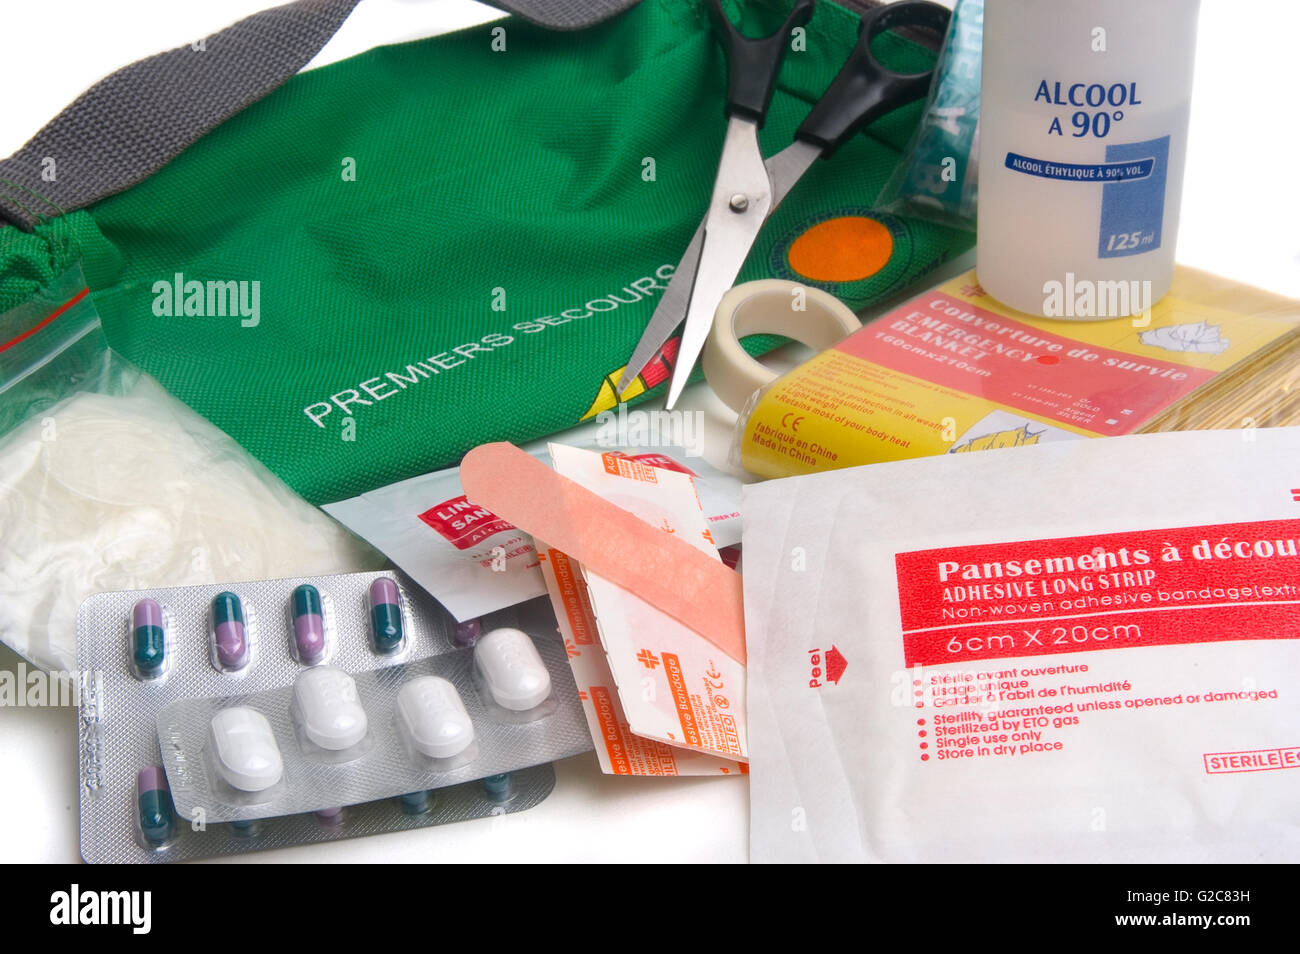 Erste-Hilfe-Kit mit allem, was Sie brauchen, zu behandeln, wie Bandagen und Desinfektionsmittel immer hilfsbereit mit dem Auto oder auf Reisen Stockfoto